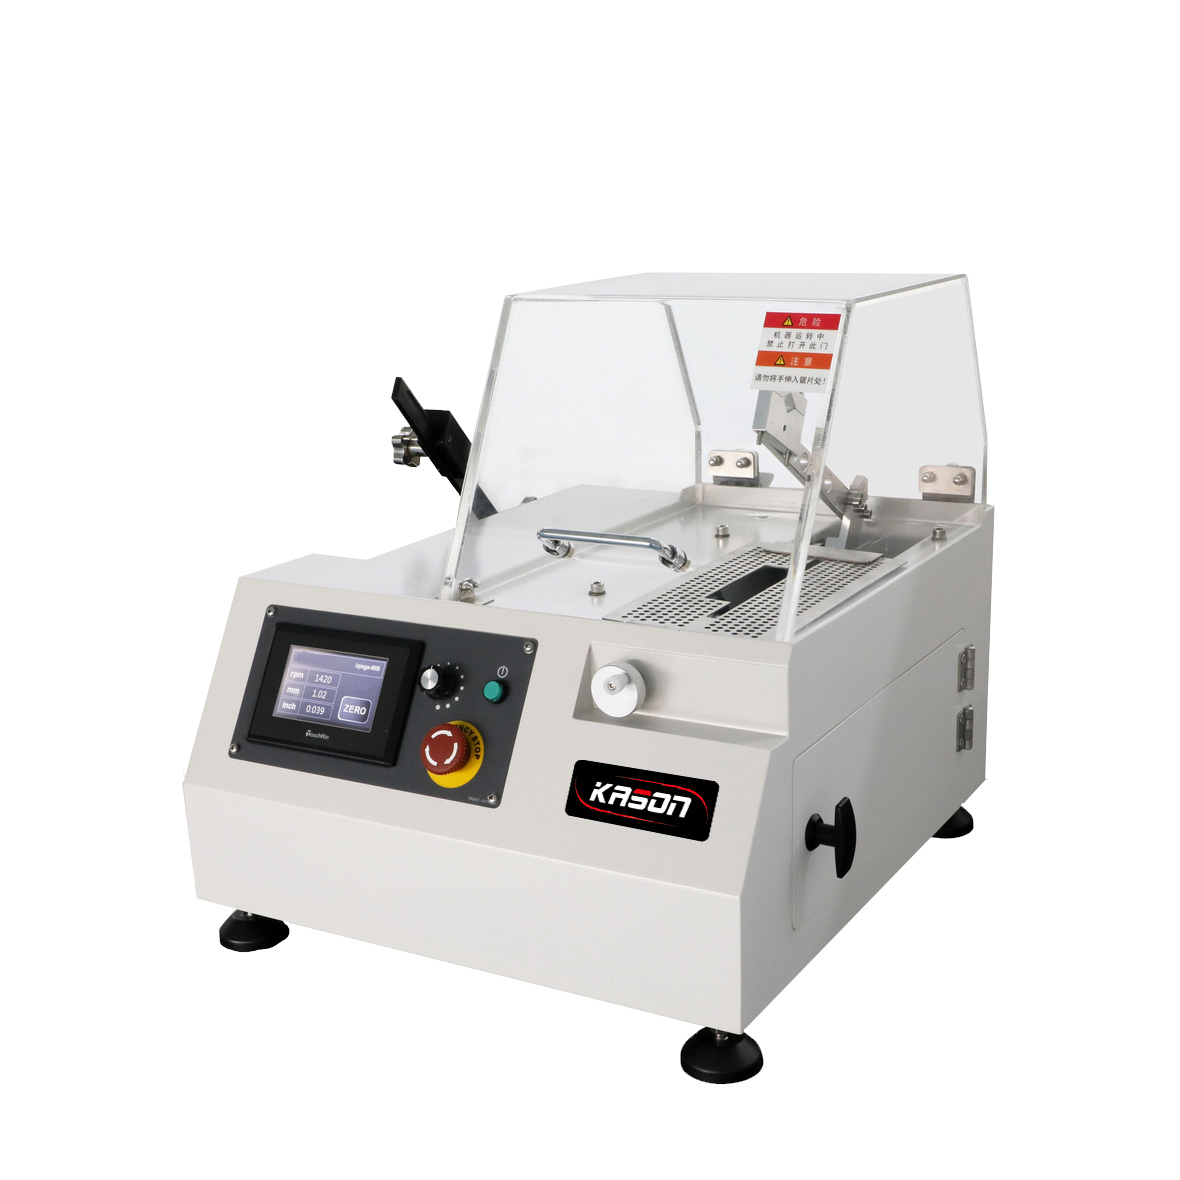 KSCUT-50CP Circular and Plat Precision Sample Cutting Machine